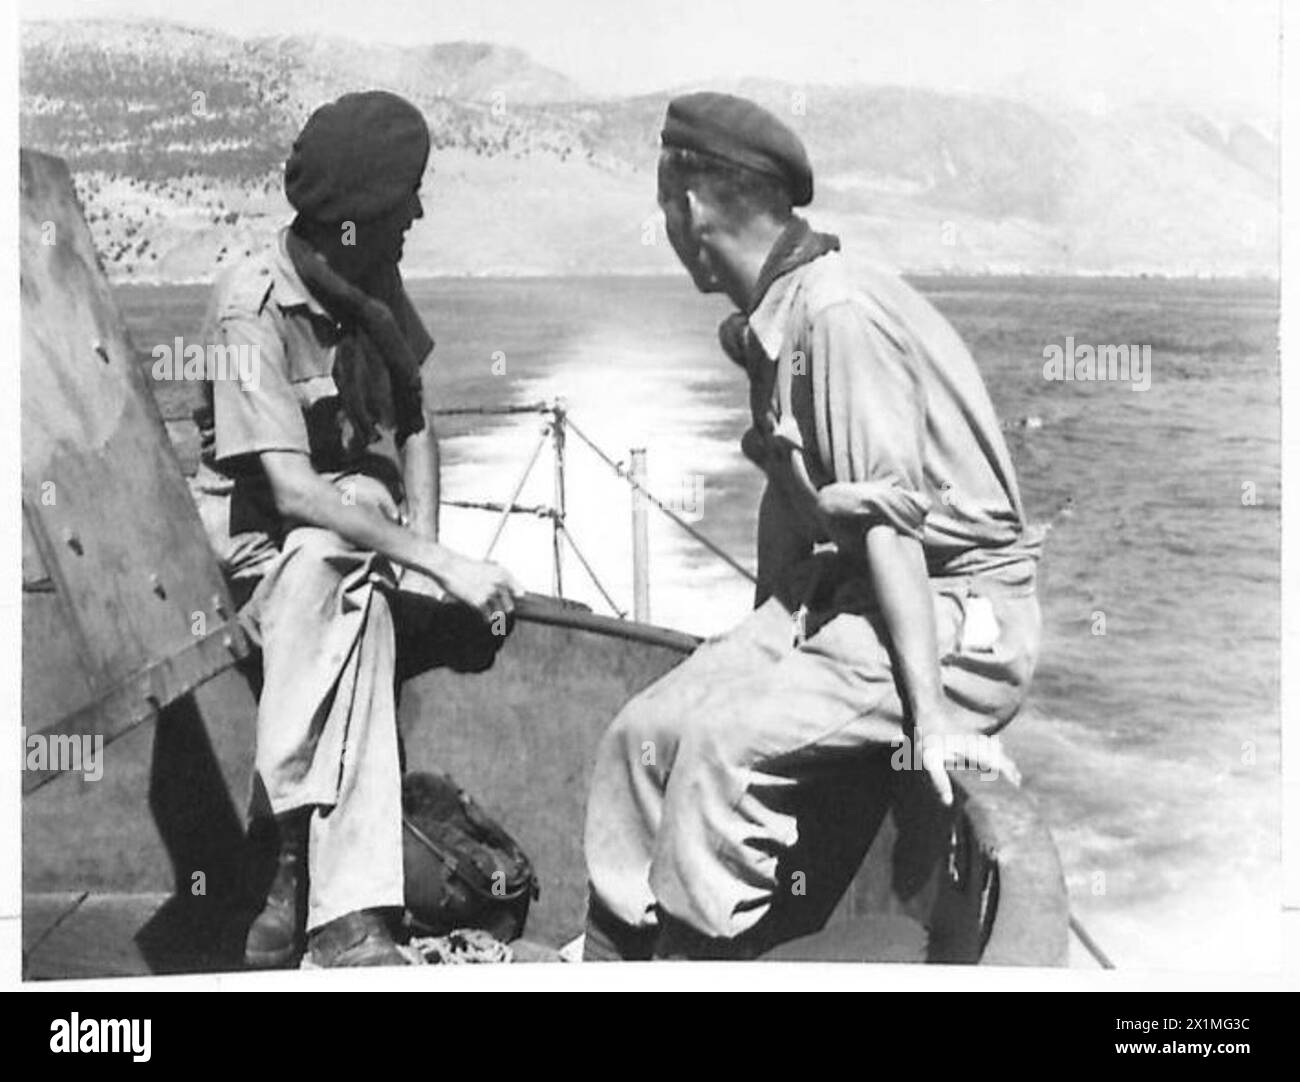 COMMANDOS RAID ALBANIA - due Commandos guardano indietro alla costa in declino dell'Albania mentre il L.C.I. si allontana durante il viaggio di ritorno. Sentono che probabilmente è "au revoir” e non "addio” a questa parte del mondo, l'esercito britannico Foto Stock